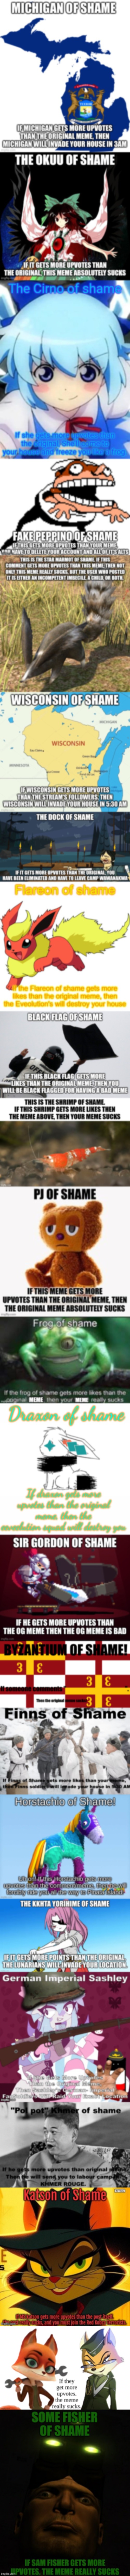 Mega frog of shame v2 | image tagged in mega frog of shame v2 | made w/ Imgflip meme maker